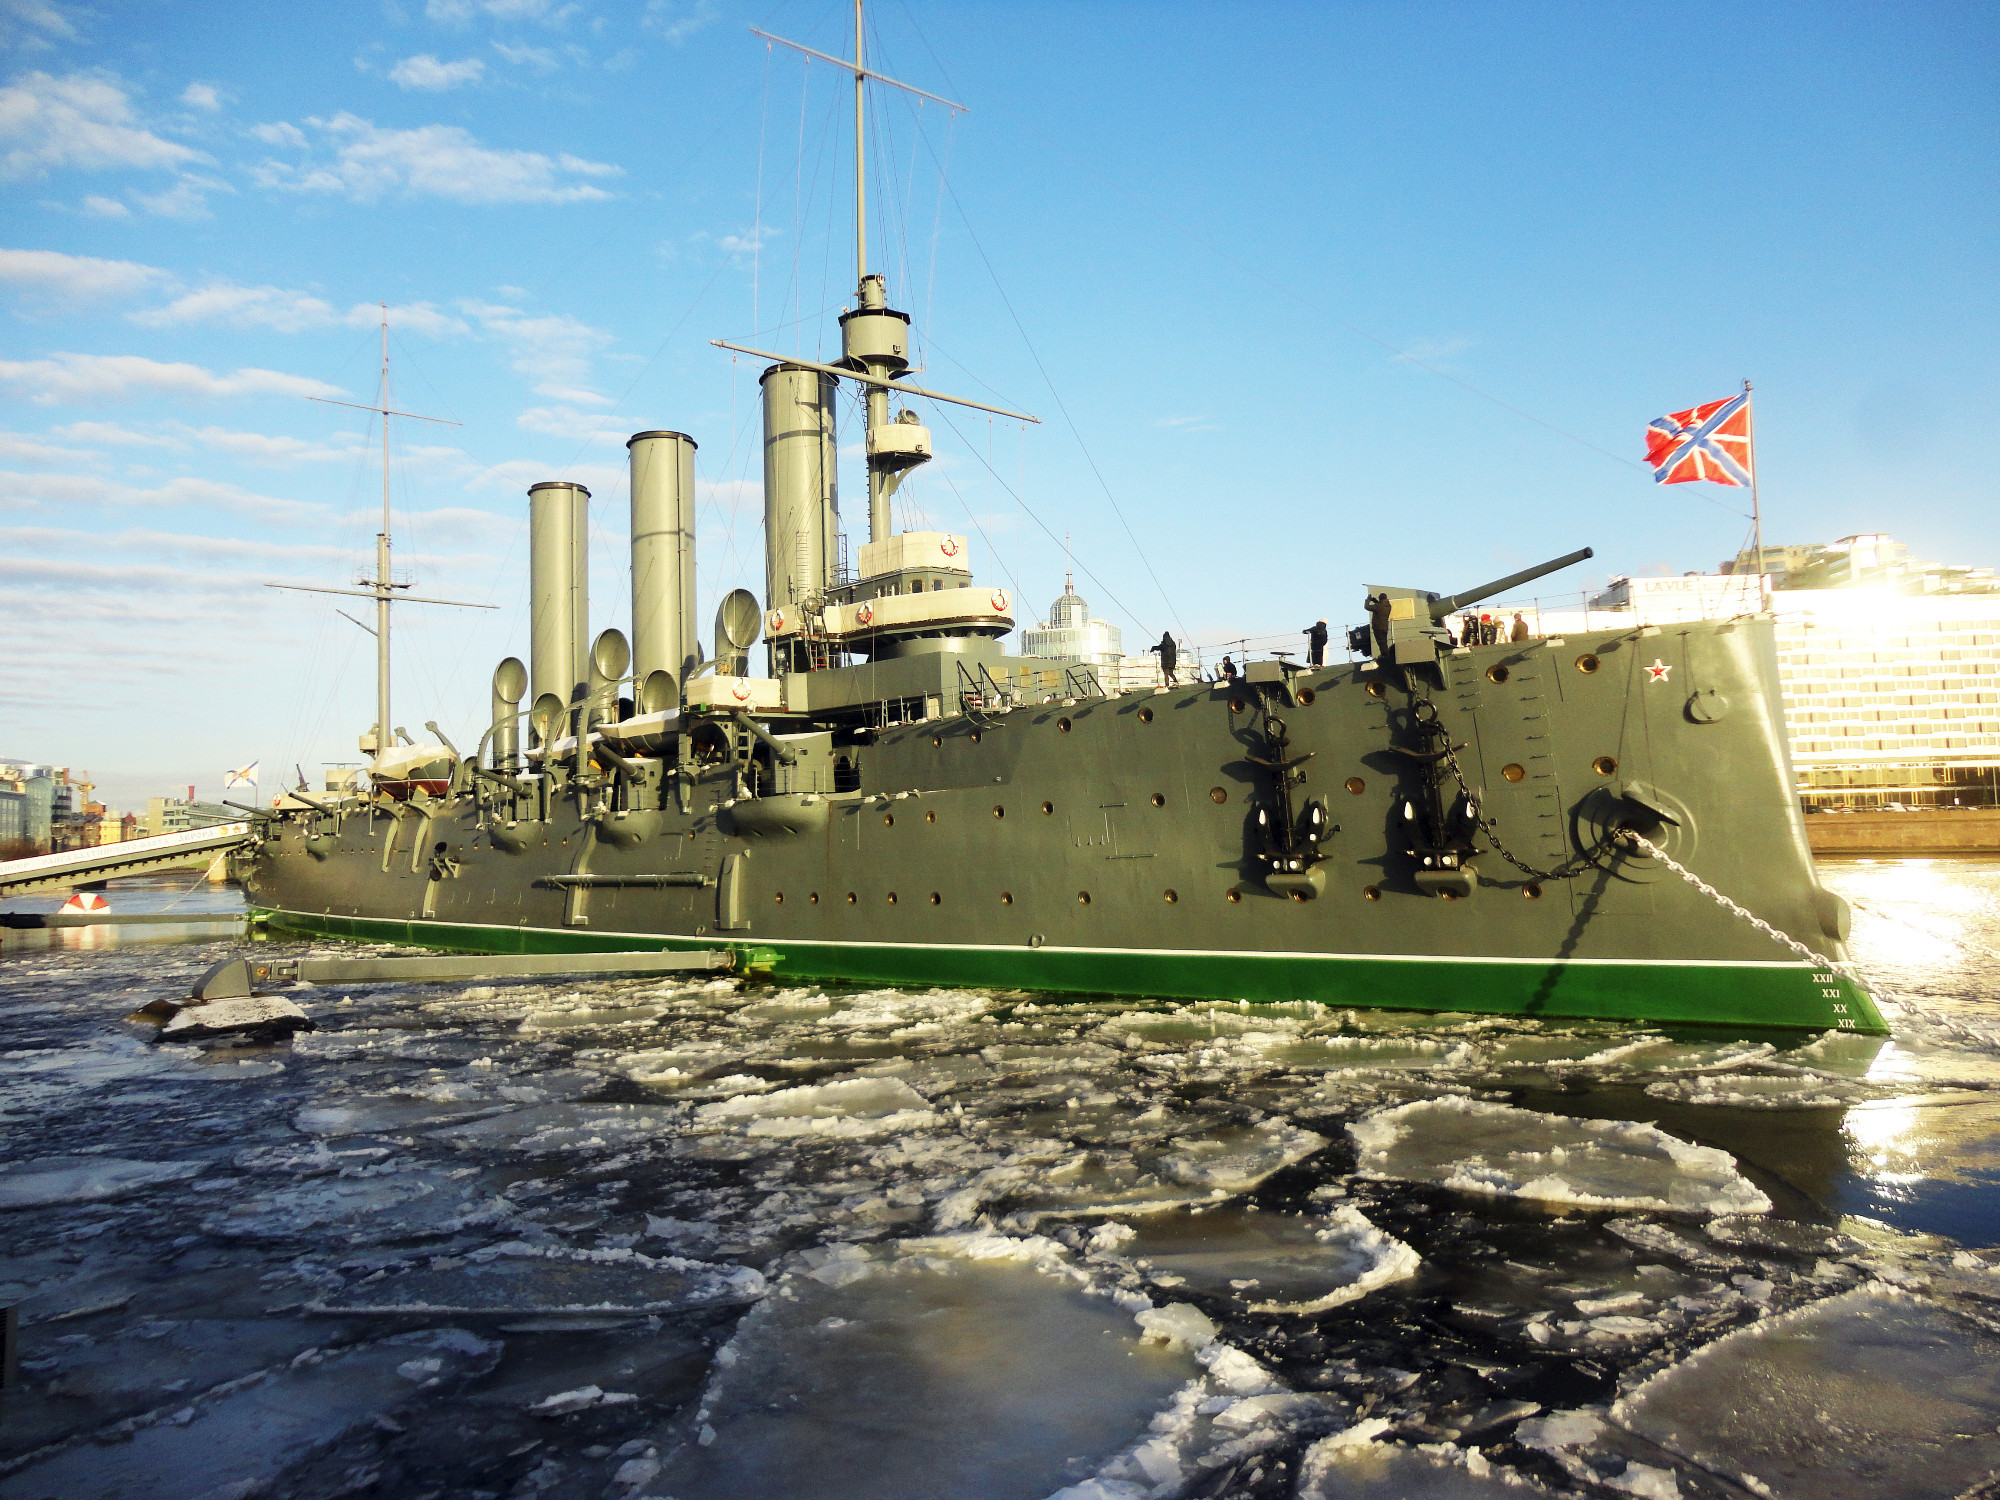 Arora War Ship